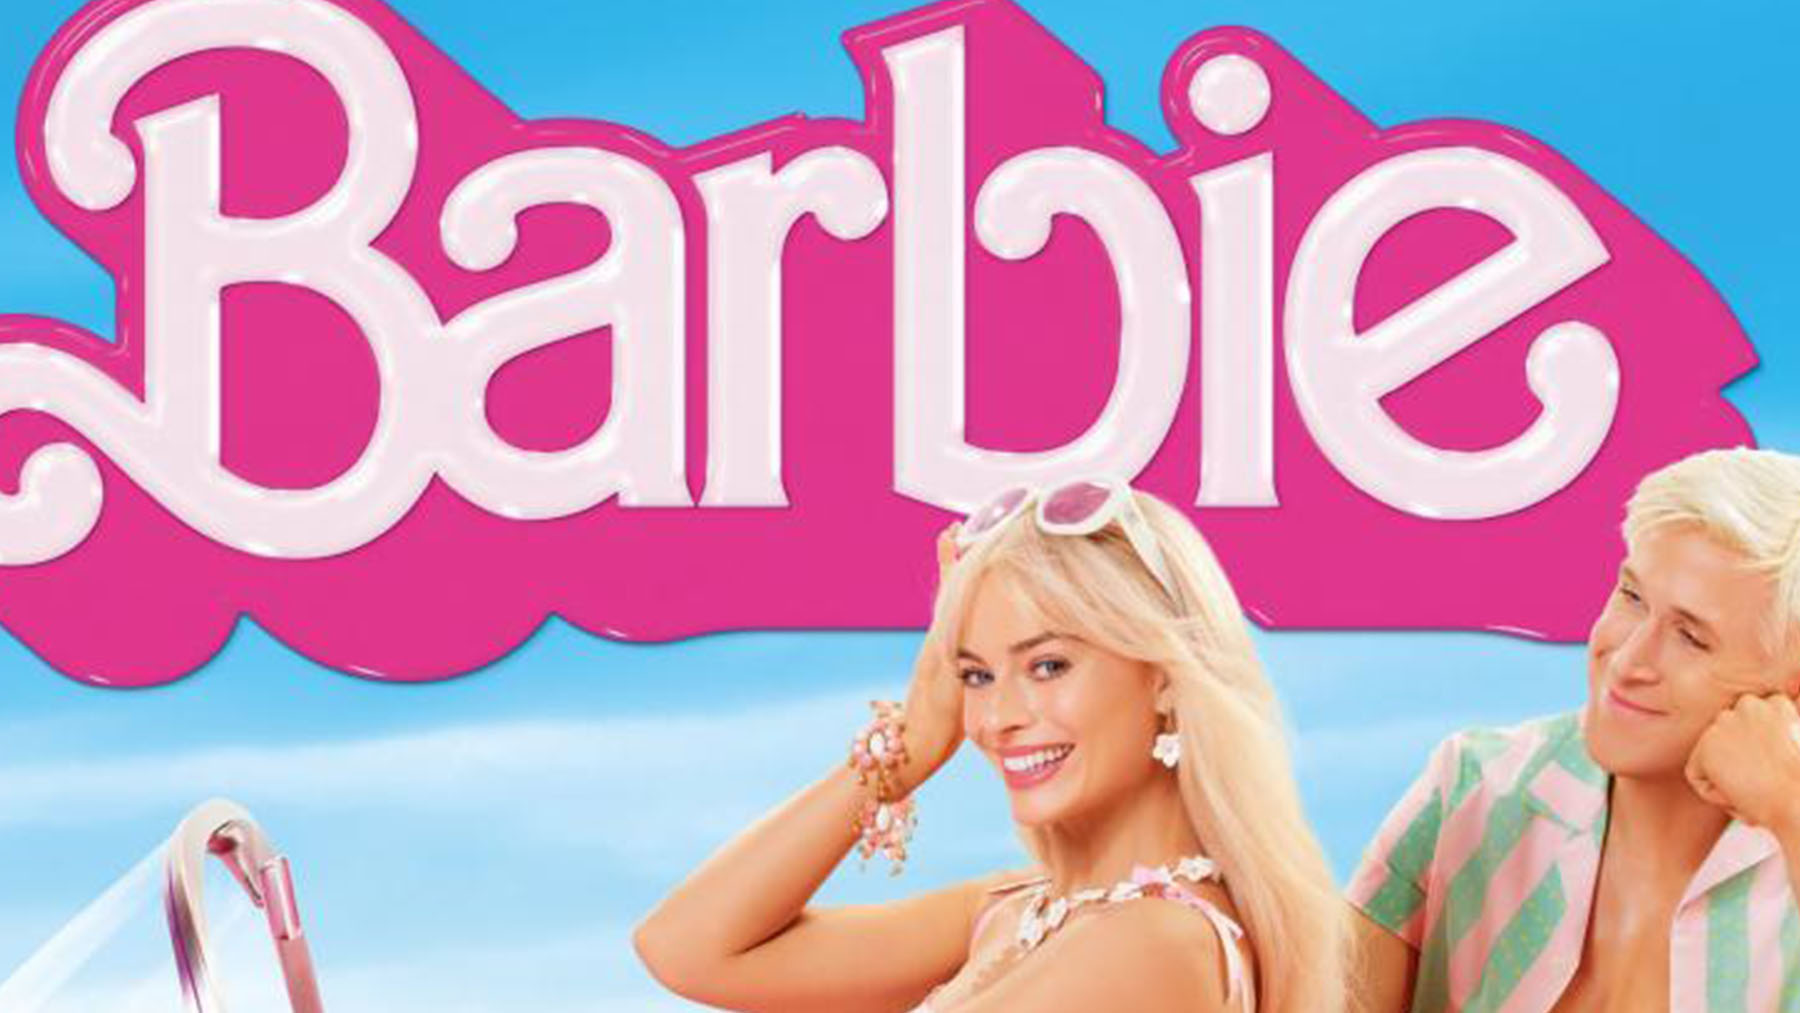 La directora Greta Gerwig habla por primera vez sobre ‘Barbie 2’